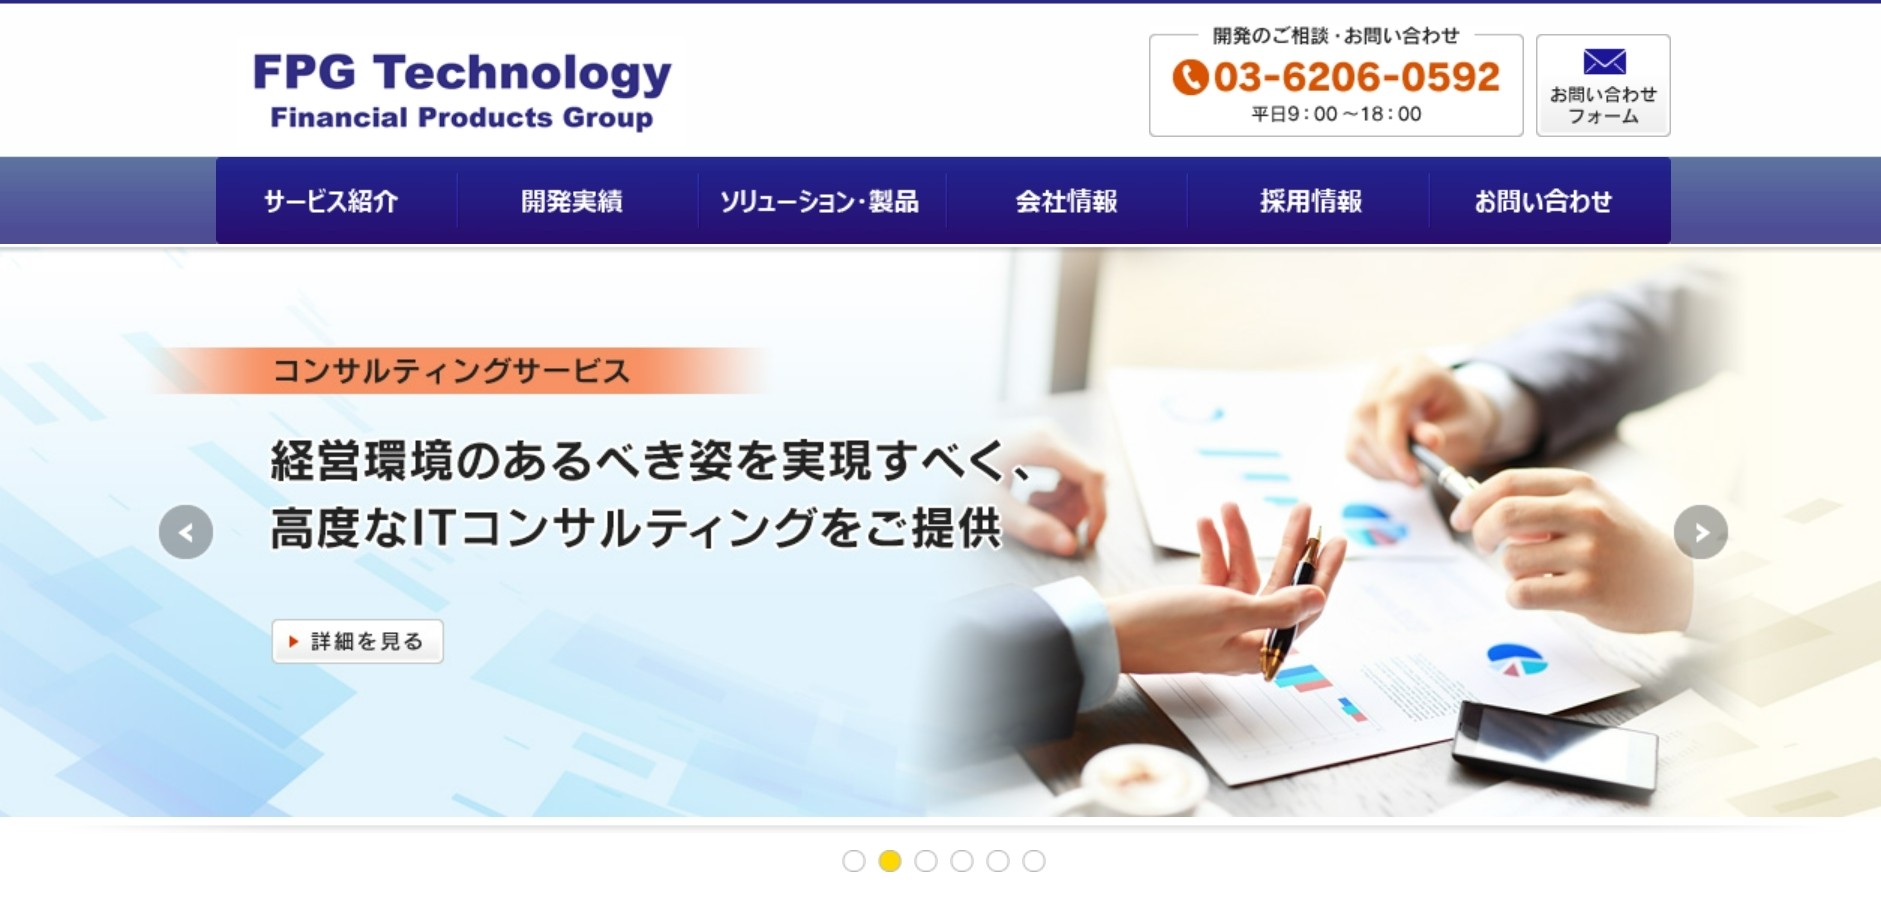 株式会社ＦＰＧテクノロジーの株式会社カタクラ・クロステクノロジー:アプリ開発サービス